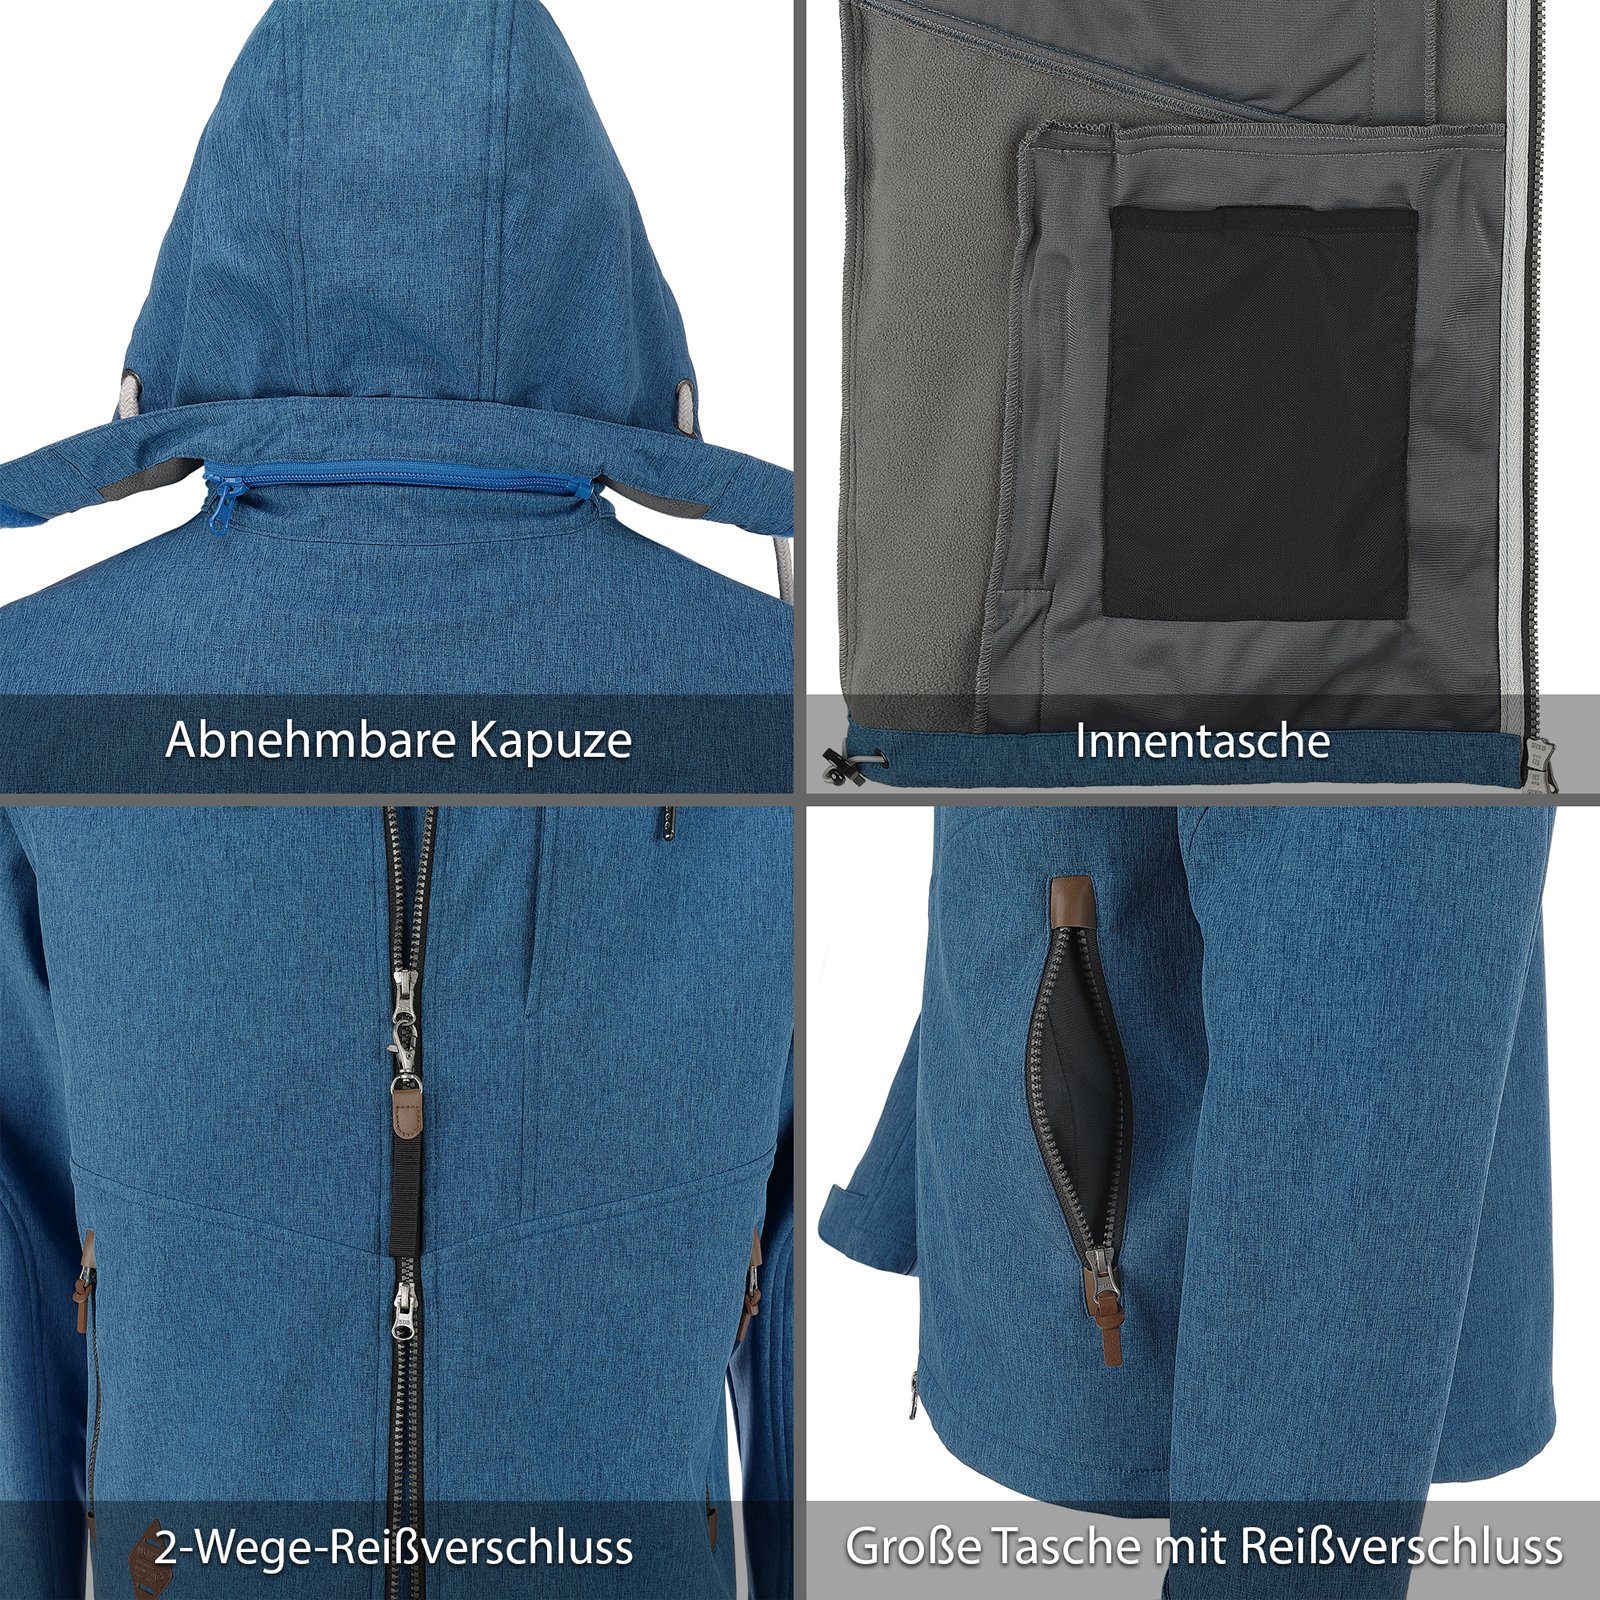 Dry Fashion Softshelljacke Herren Jacke und Fleece-Innenfutter Eckernförde melange mit Kapuze blau Meliert